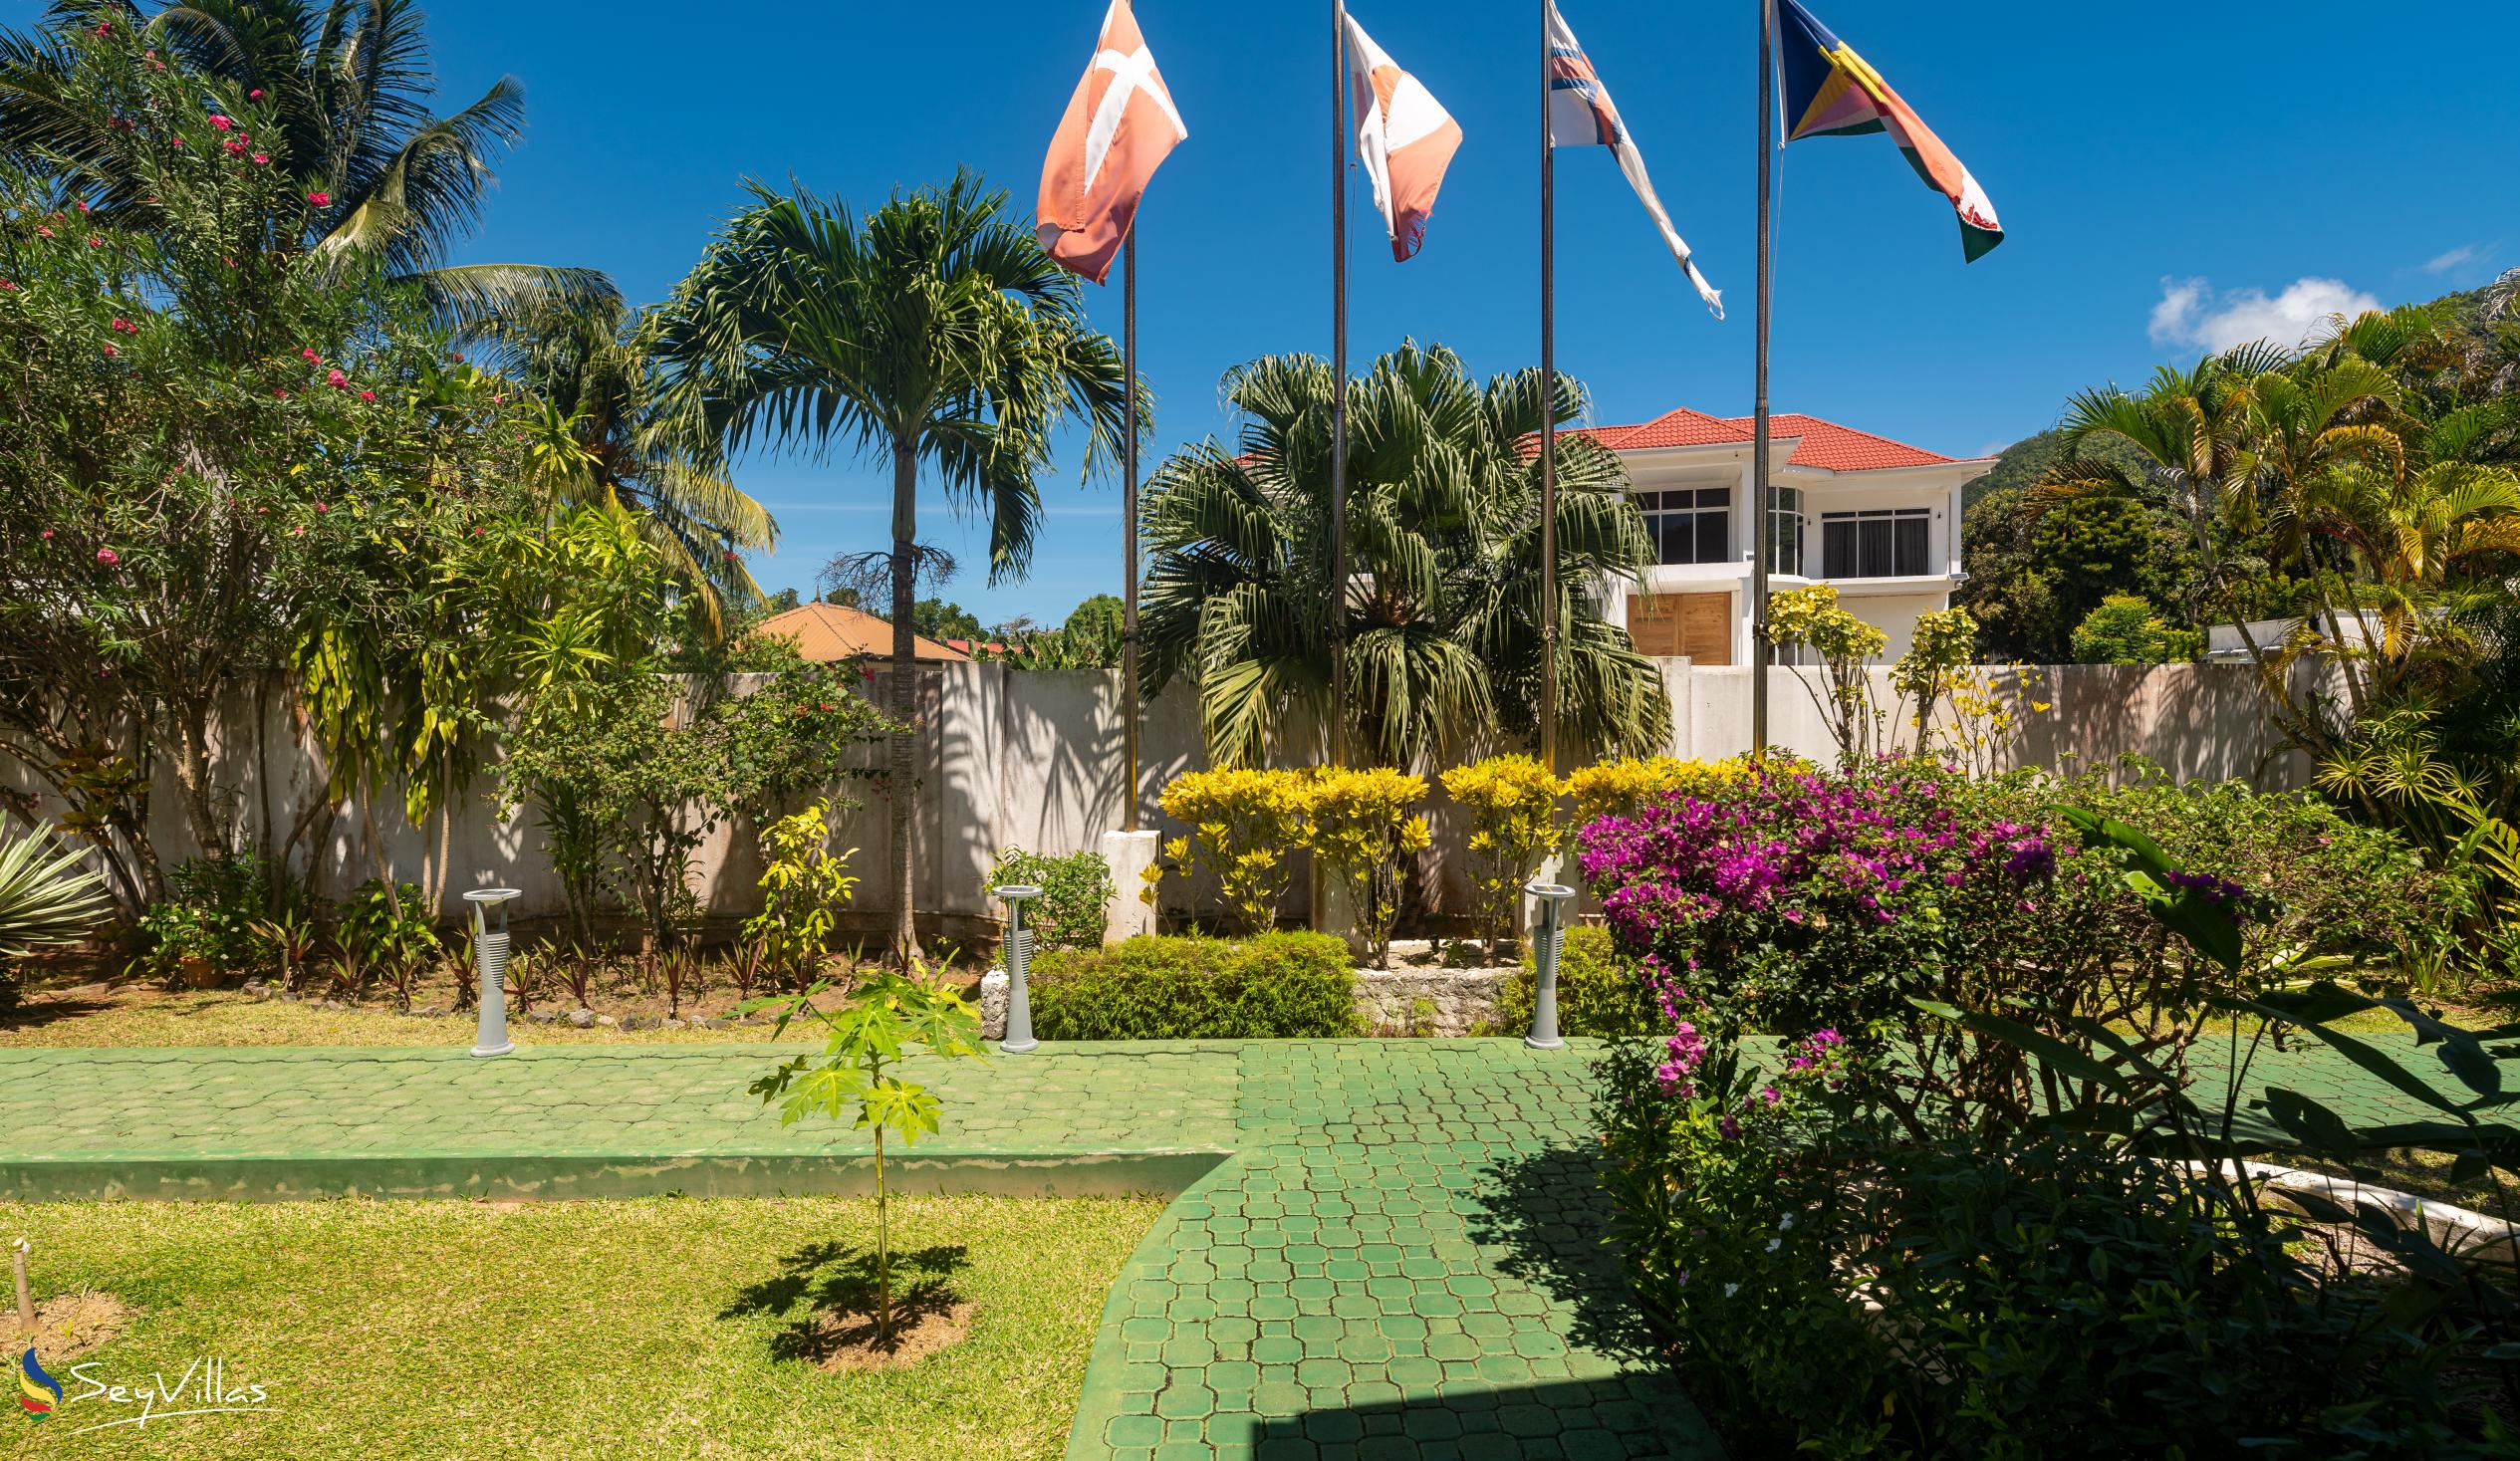 Foto 17: Villa Caballero - Extérieur - Mahé (Seychelles)